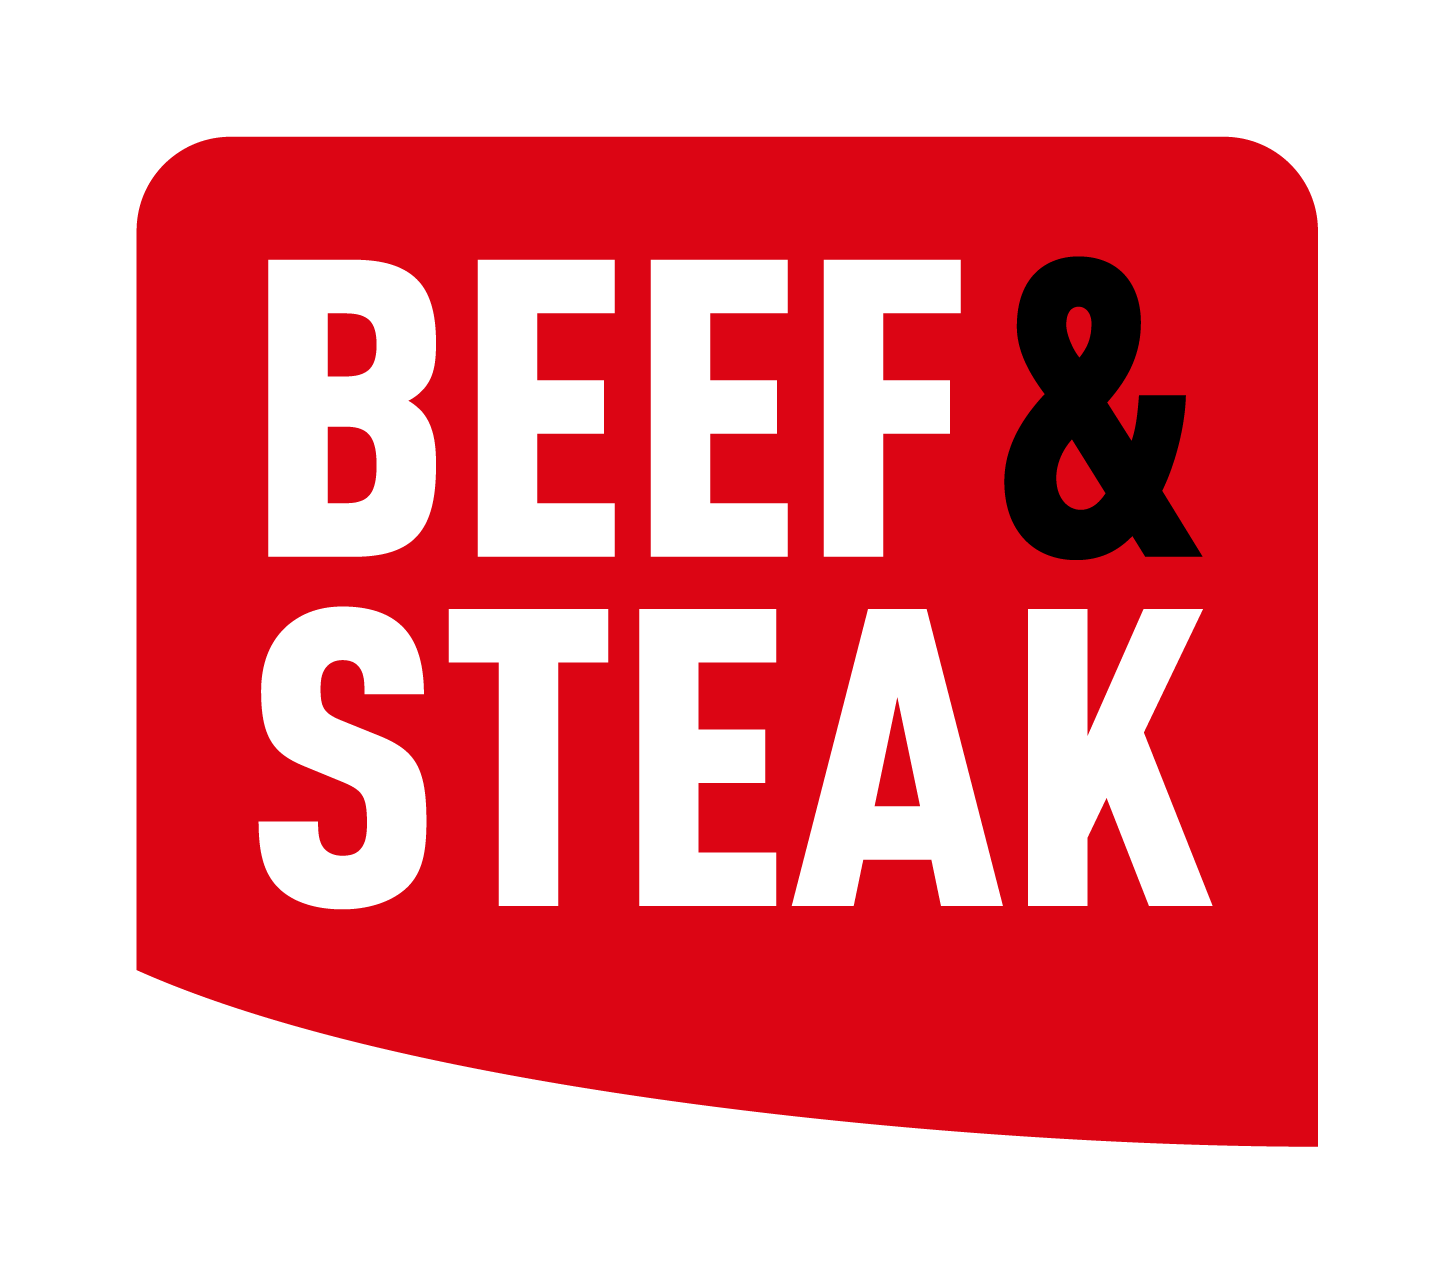 BEEF & Steak